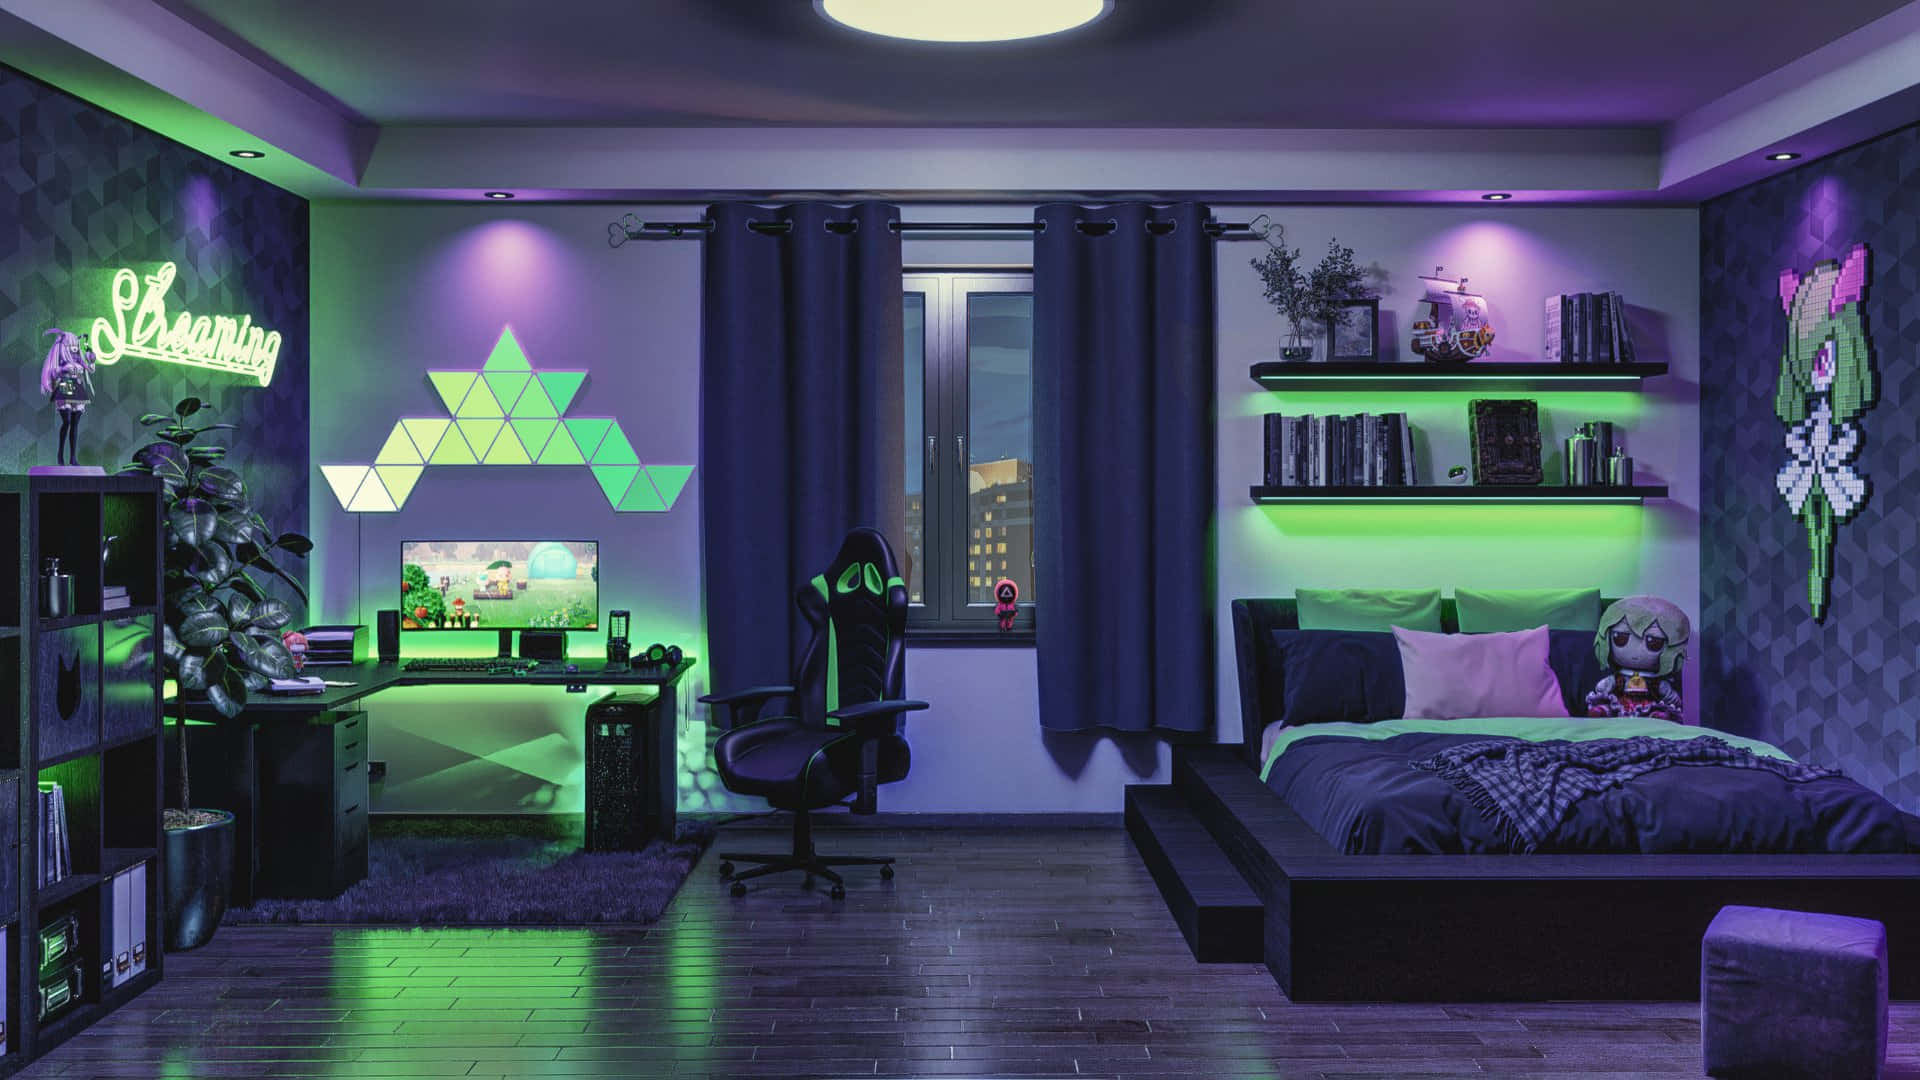 Einschlafzimmer Mit Grüner Und Lila Beleuchtung.